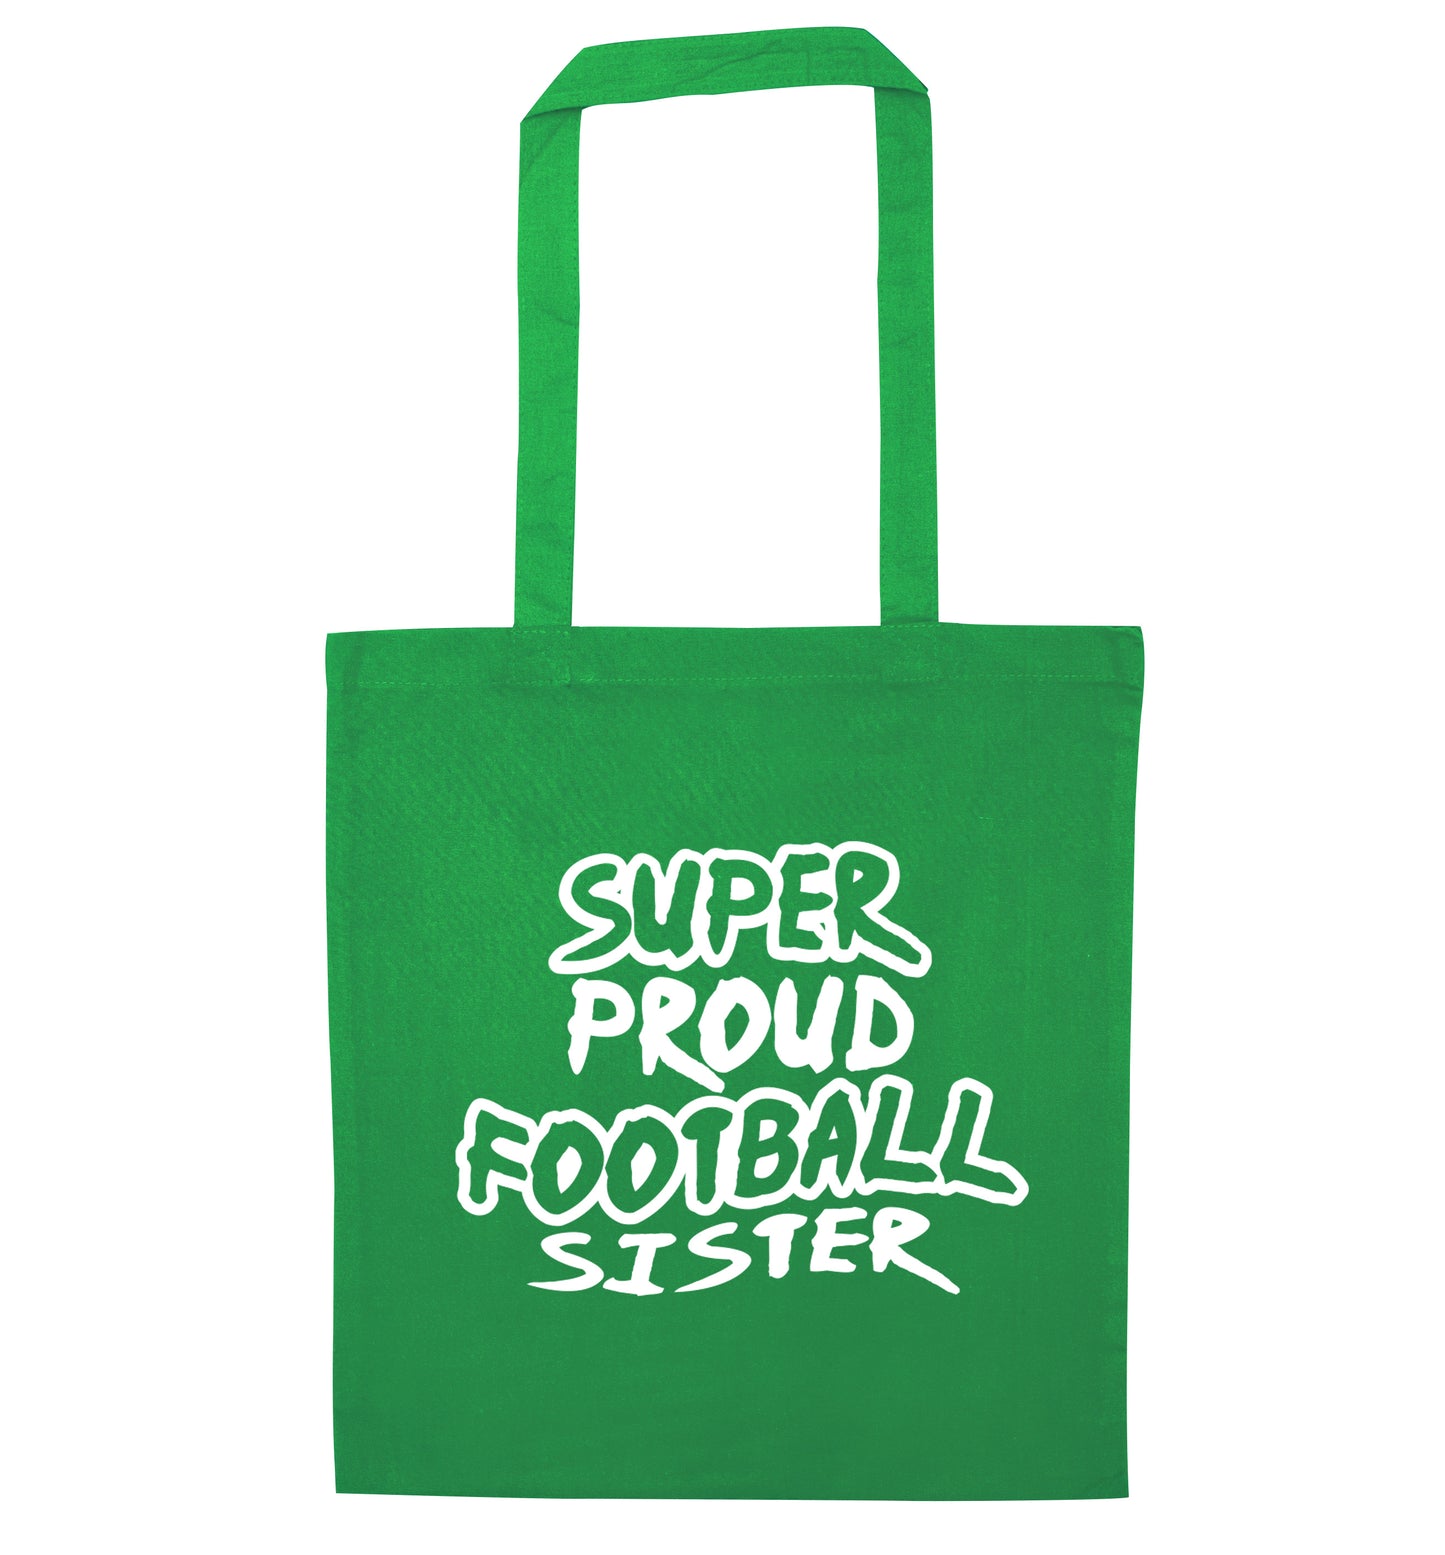 Super proud football sister green tote bag